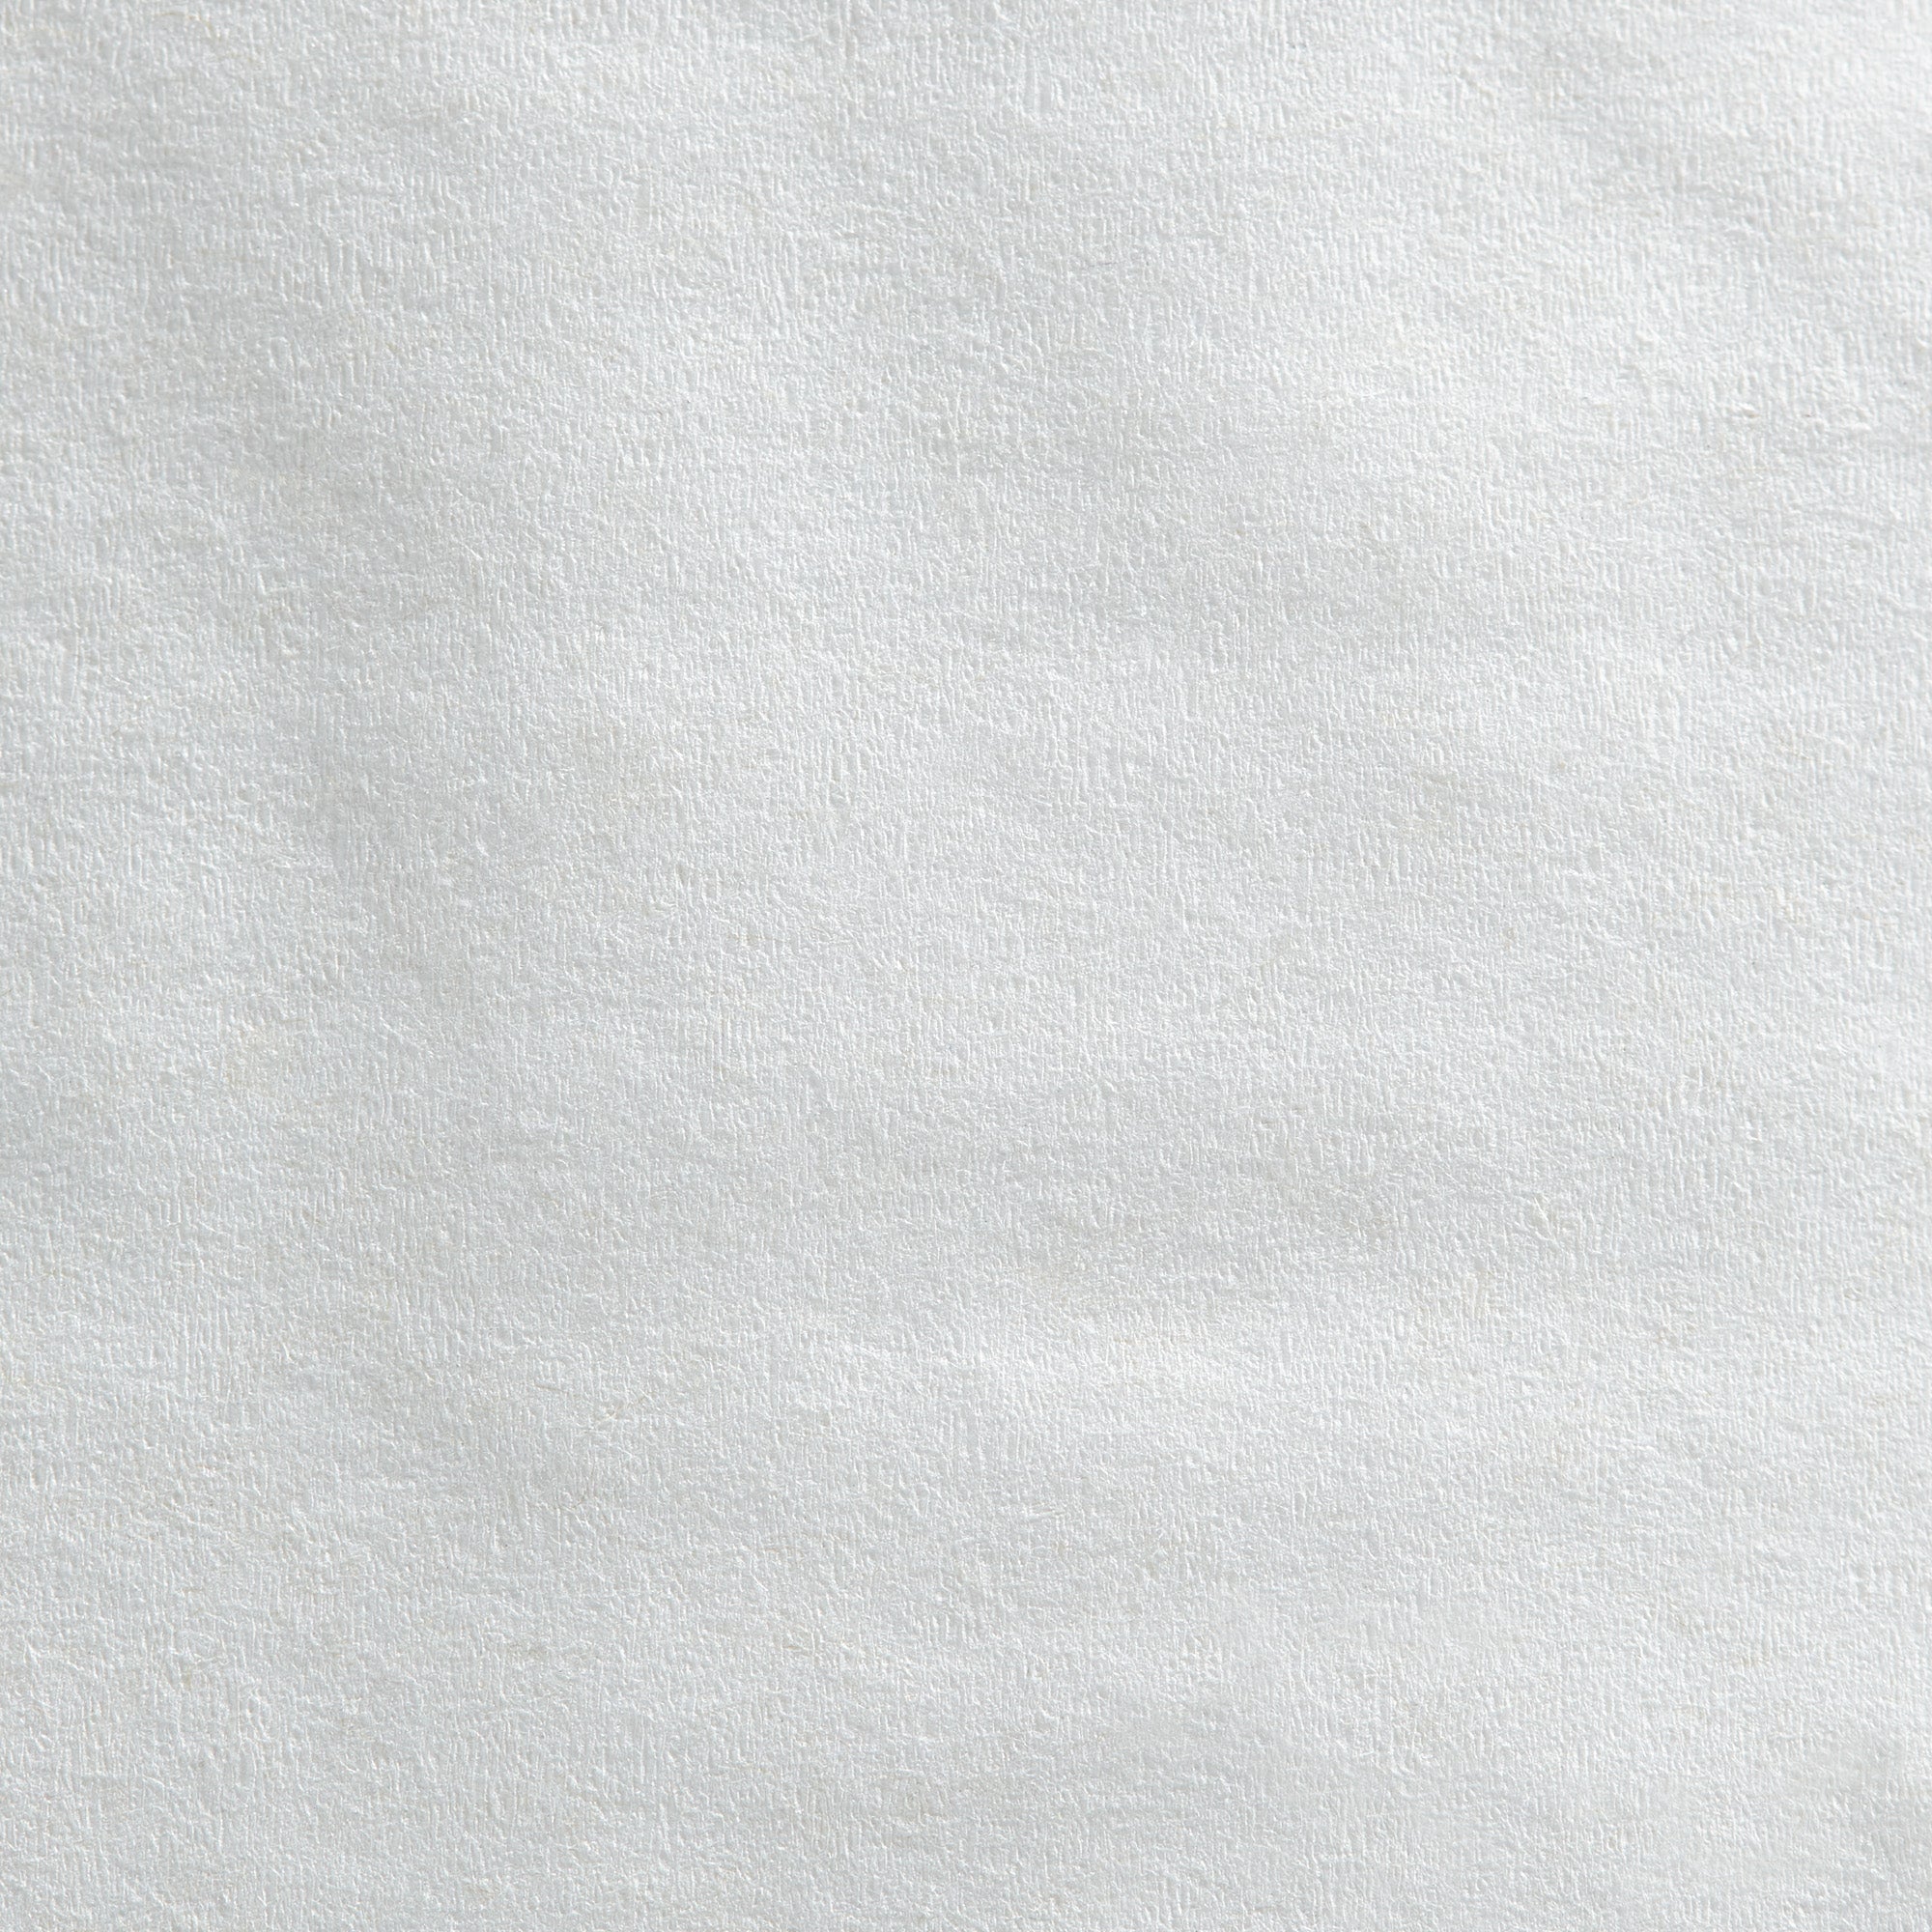 נייר טואלט דו-שכבתי ג'מבו ג'וניור PACIFIC BLUE BASIC™ מבית GP PRO (ג'ורג'יה פסיפיק), לבן, (8 גלילים של 304.80 מטרים סהכ 2,438.40 מטרים)